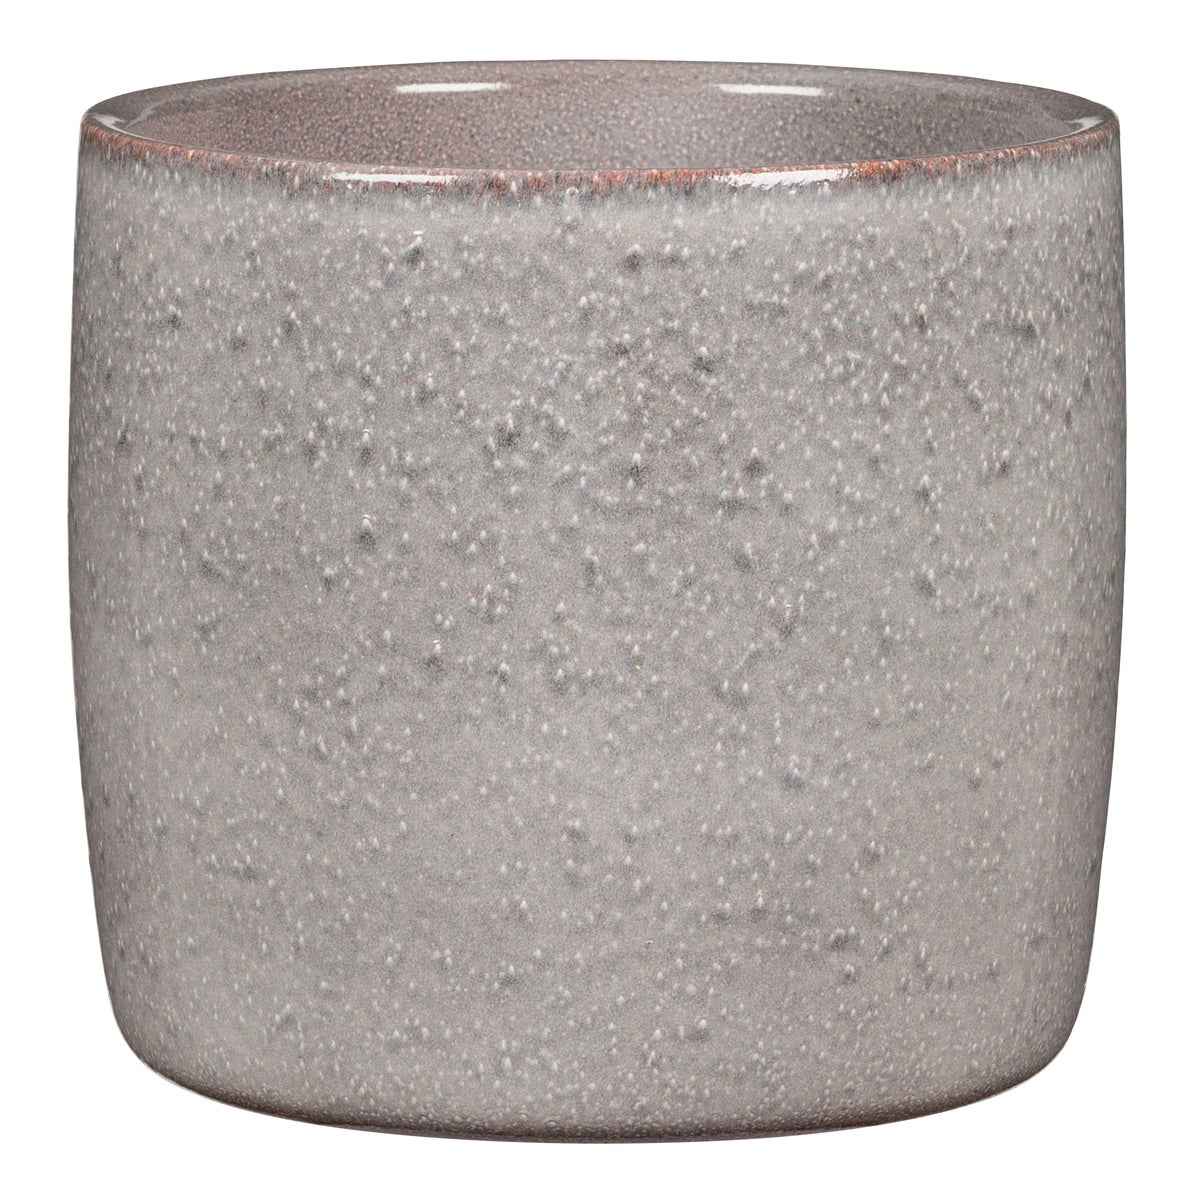 Scheurich Solido, Blumentopf aus Keramik,  Farbe: Seashell, 15 cm Durchmesser, 13,7 cm hoch, 1,9 l Vol.